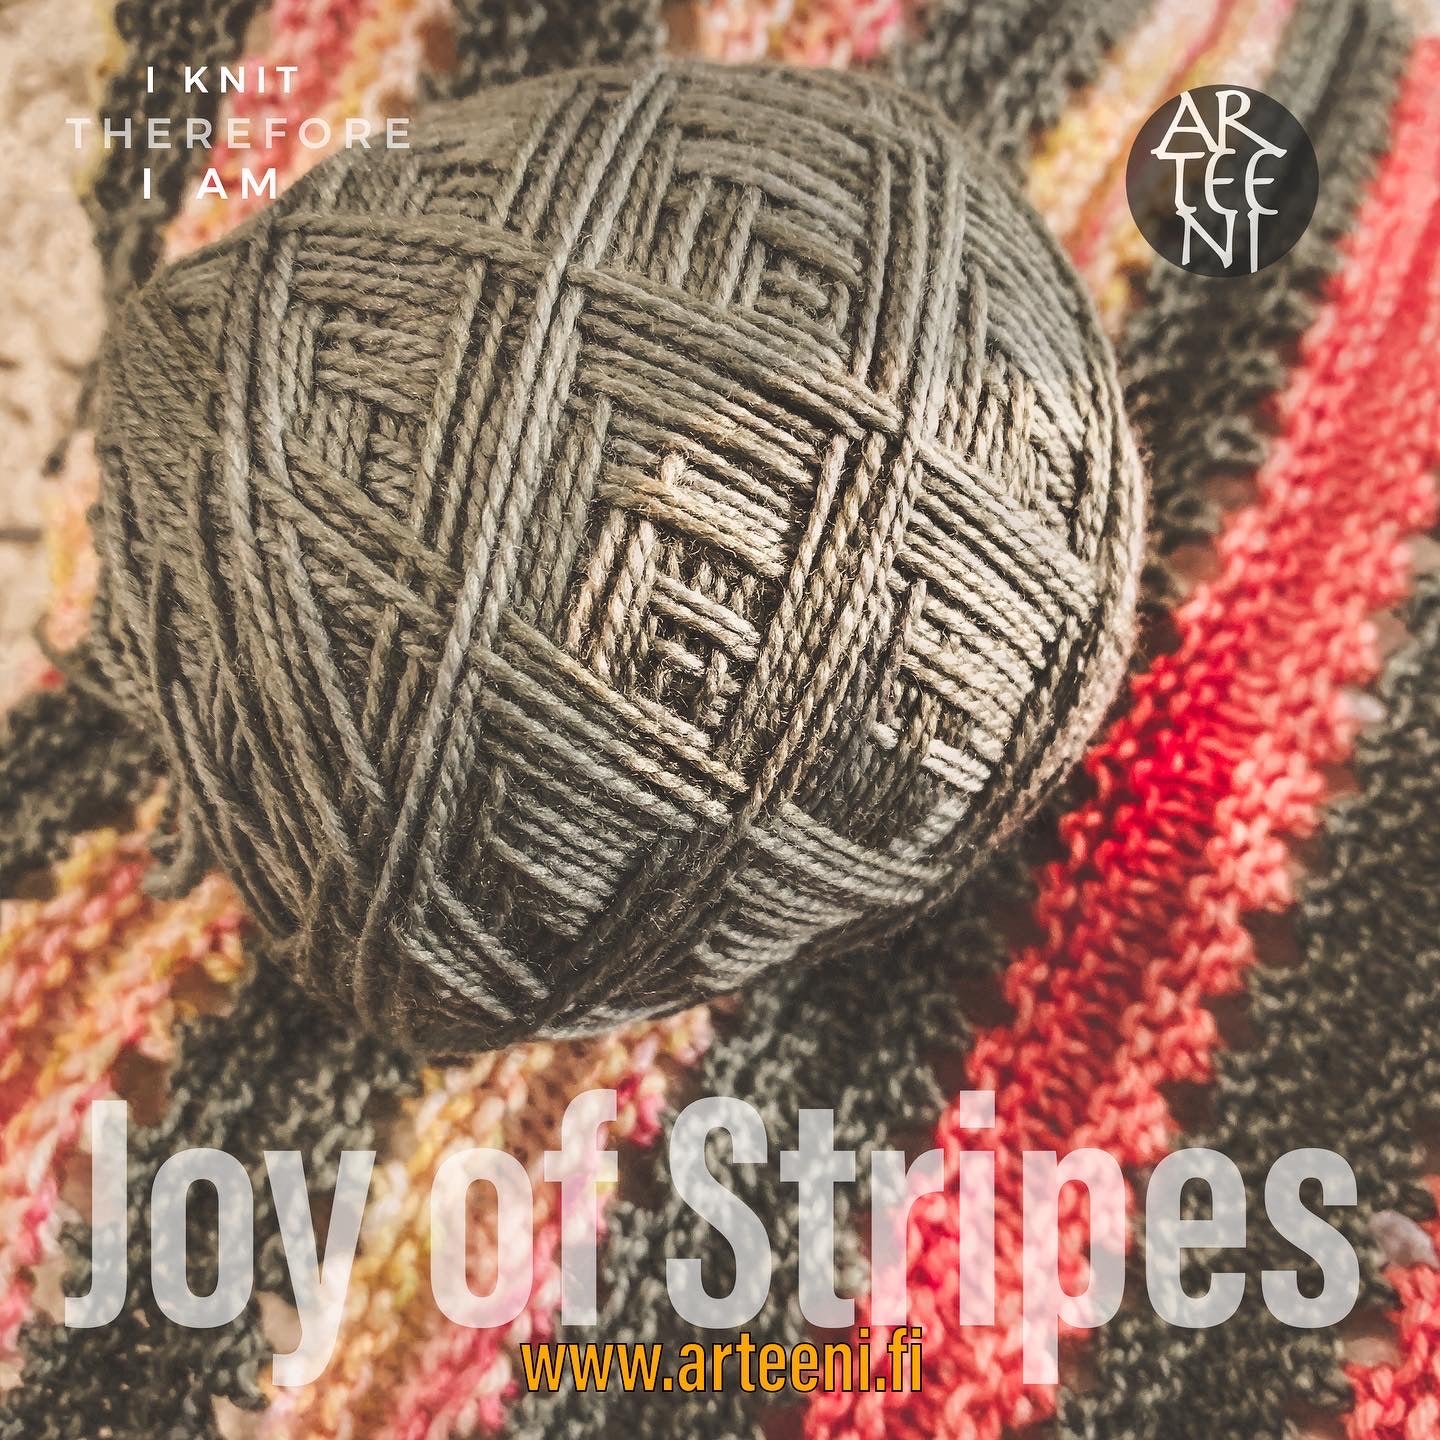 Joy of Stripes (FI, EN)